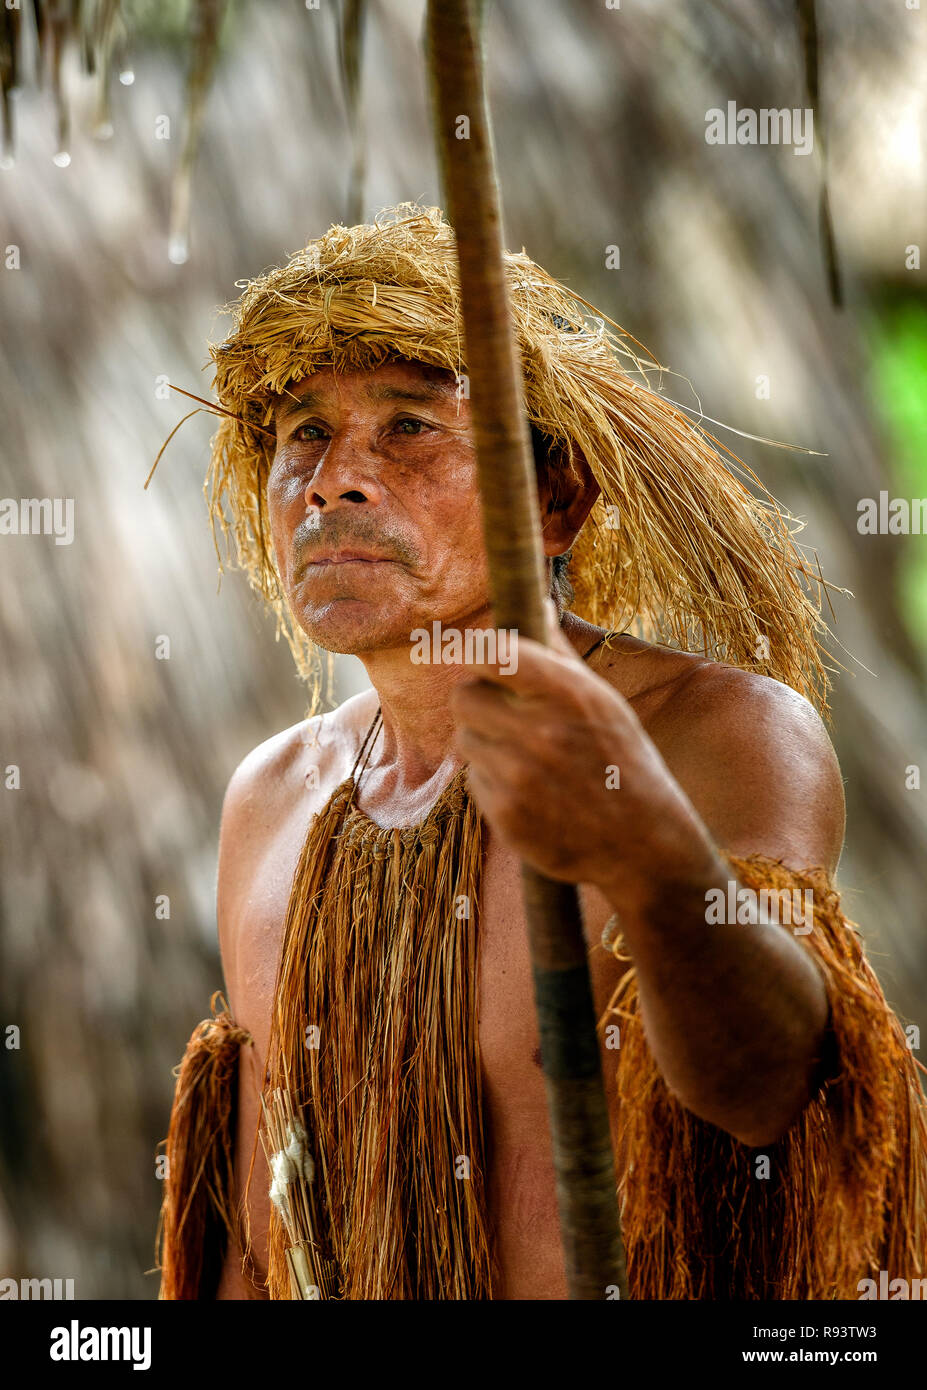 Hombre llevando un indio Yagua pucuna (soplete) en la amazonía peruana Foto de stock